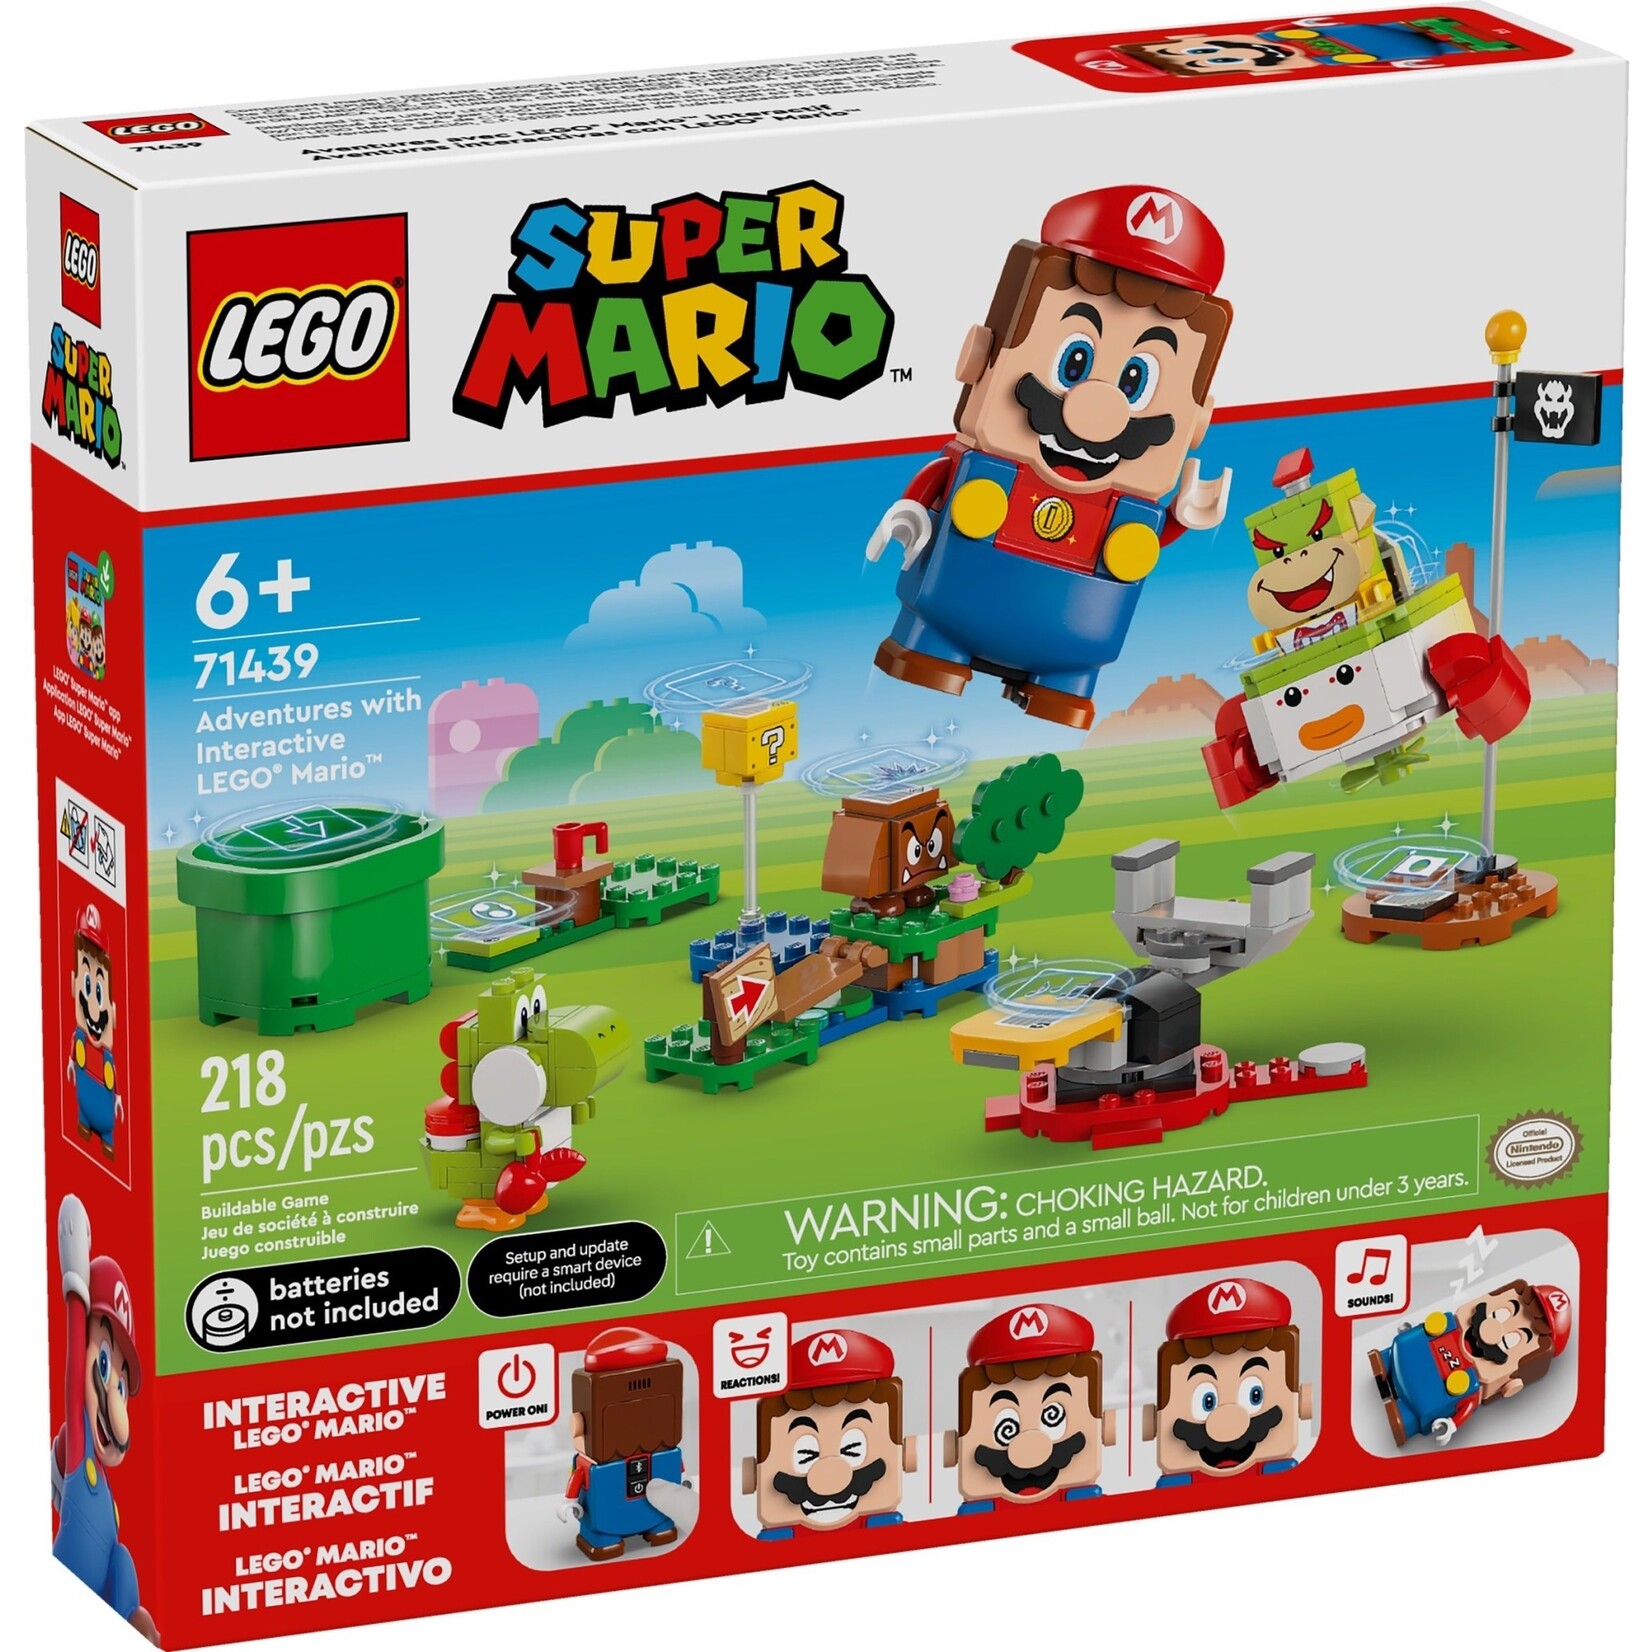 LEGO Avonturen met interactieve LEGO® Mario™ - 71439